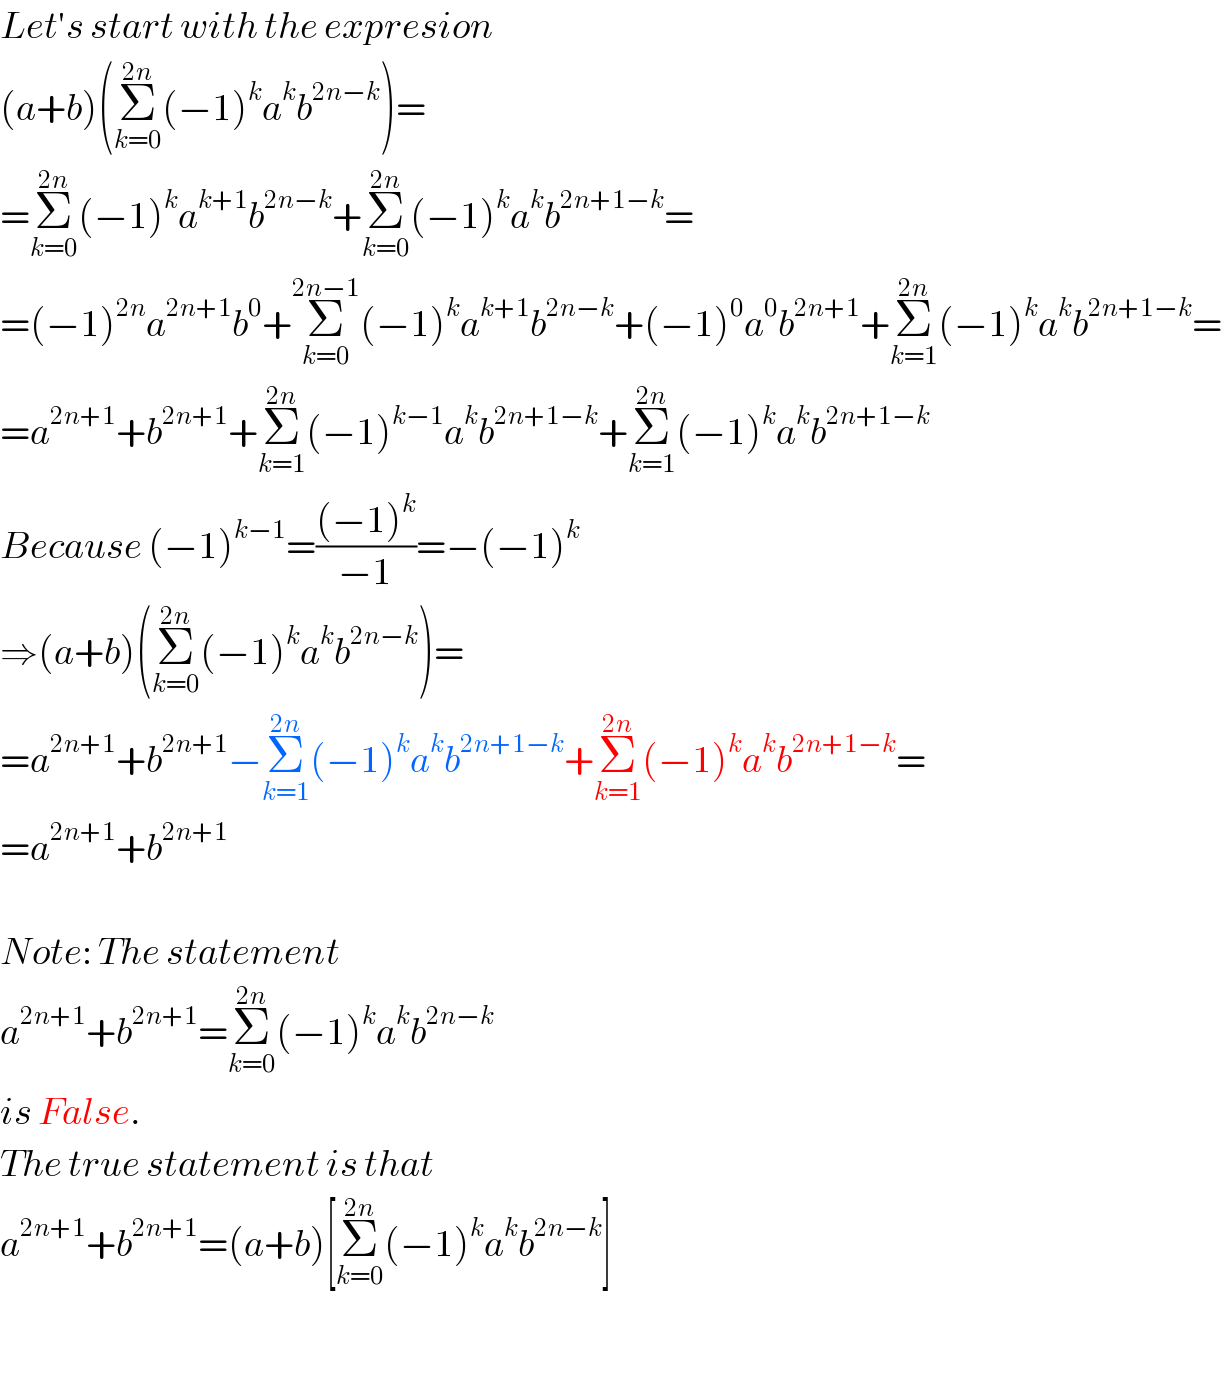 Let′s start with the expresion  (a+b)(Σ_(k=0) ^(2n) (−1)^k a^k b^(2n−k) )=  =Σ_(k=0) ^(2n) (−1)^k a^(k+1) b^(2n−k) +Σ_(k=0) ^(2n) (−1)^k a^k b^(2n+1−k) =  =(−1)^(2n) a^(2n+1) b^0 +Σ_(k=0) ^(2n−1) (−1)^k a^(k+1) b^(2n−k) +(−1)^0 a^0 b^(2n+1) +Σ_(k=1) ^(2n) (−1)^k a^k b^(2n+1−k) =  =a^(2n+1) +b^(2n+1) +Σ_(k=1) ^(2n) (−1)^(k−1) a^k b^(2n+1−k) +Σ_(k=1) ^(2n) (−1)^k a^k b^(2n+1−k)   Because (−1)^(k−1) =(((−1)^k )/(−1))=−(−1)^k   ⇒(a+b)(Σ_(k=0) ^(2n) (−1)^k a^k b^(2n−k) )=  =a^(2n+1) +b^(2n+1) −Σ_(k=1) ^(2n) (−1)^k a^k b^(2n+1−k) +Σ_(k=1) ^(2n) (−1)^k a^k b^(2n+1−k) =  =a^(2n+1) +b^(2n+1)     Note: The statement  a^(2n+1) +b^(2n+1) =Σ_(k=0) ^(2n) (−1)^k a^k b^(2n−k)   is False.  The true statement is that  a^(2n+1) +b^(2n+1) =(a+b)[Σ_(k=0) ^(2n) (−1)^k a^k b^(2n−k) ]    